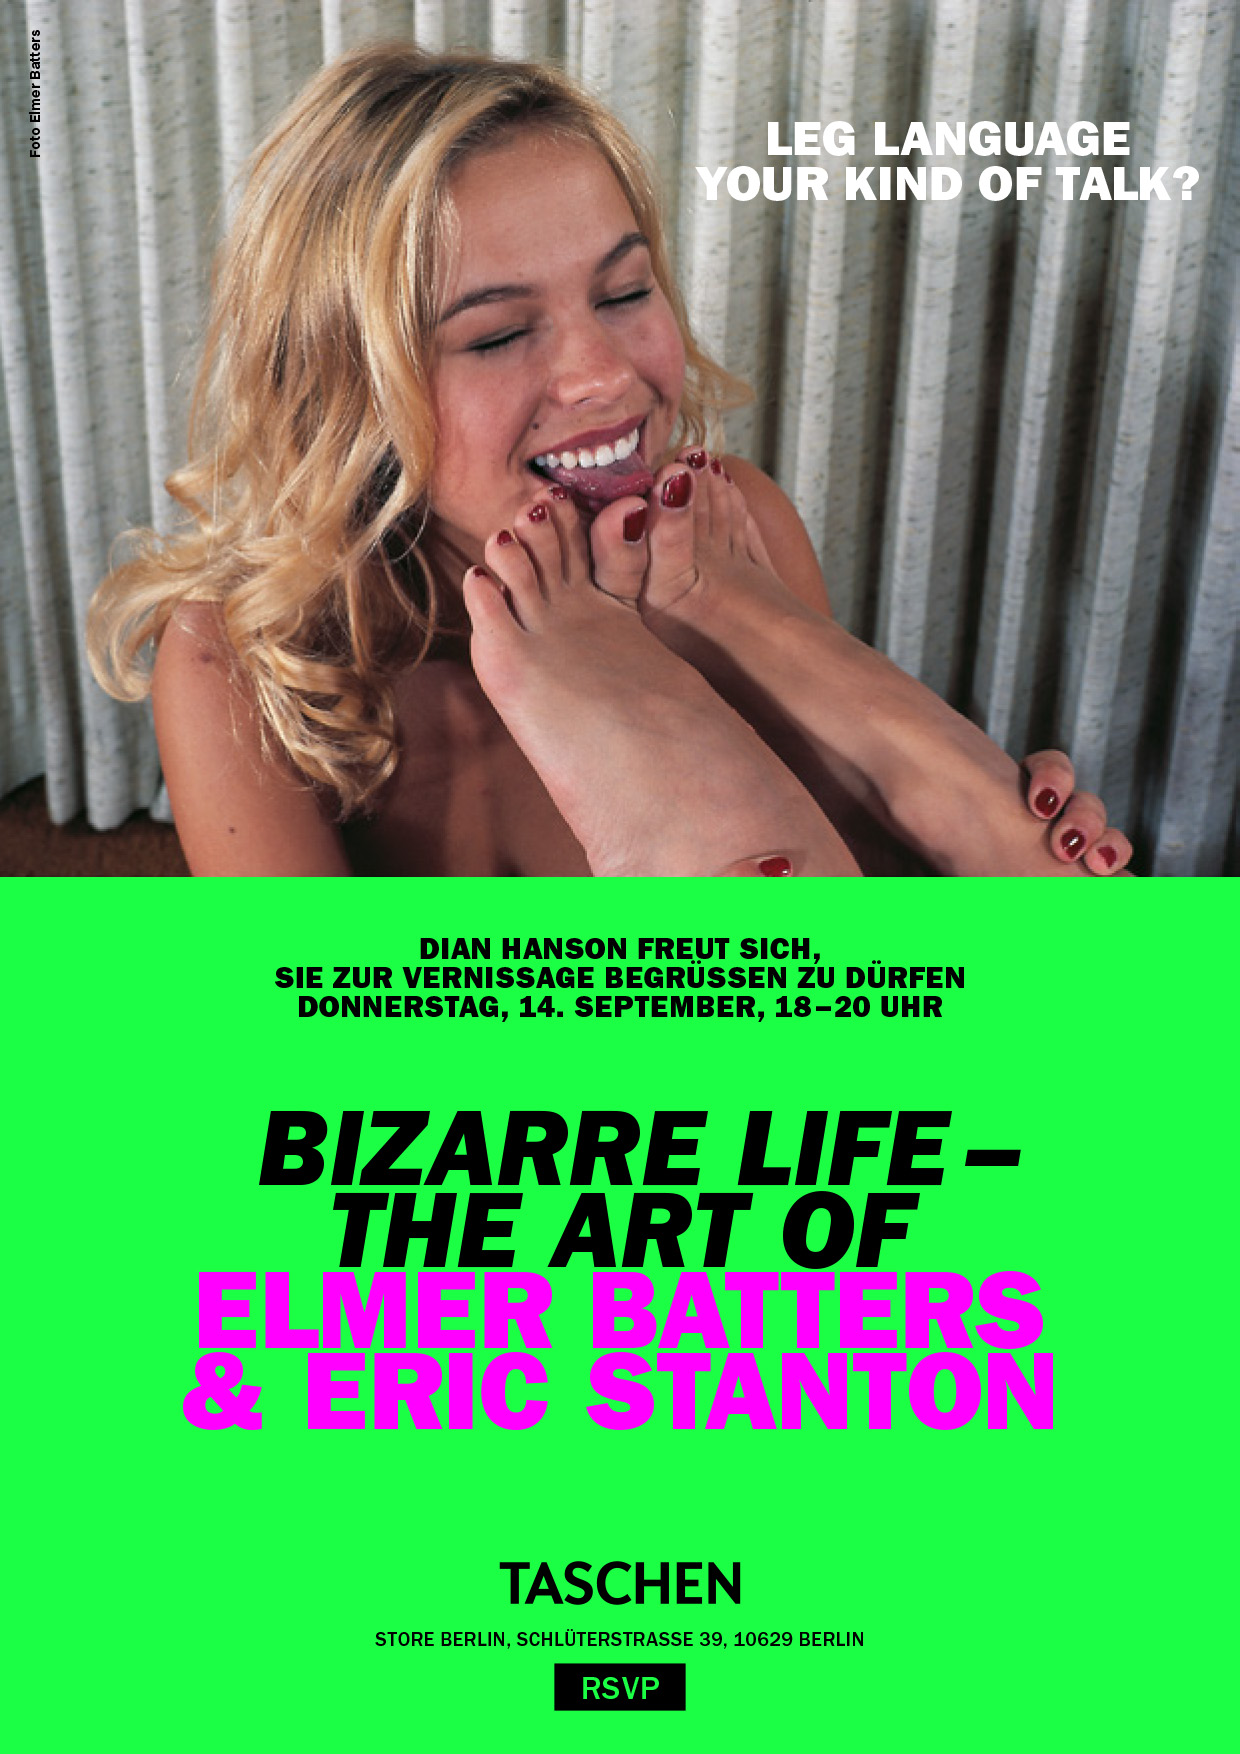 Vernissag am 14. September: Bizzarre Life - The Art of Elmer Batters & Eric Staton